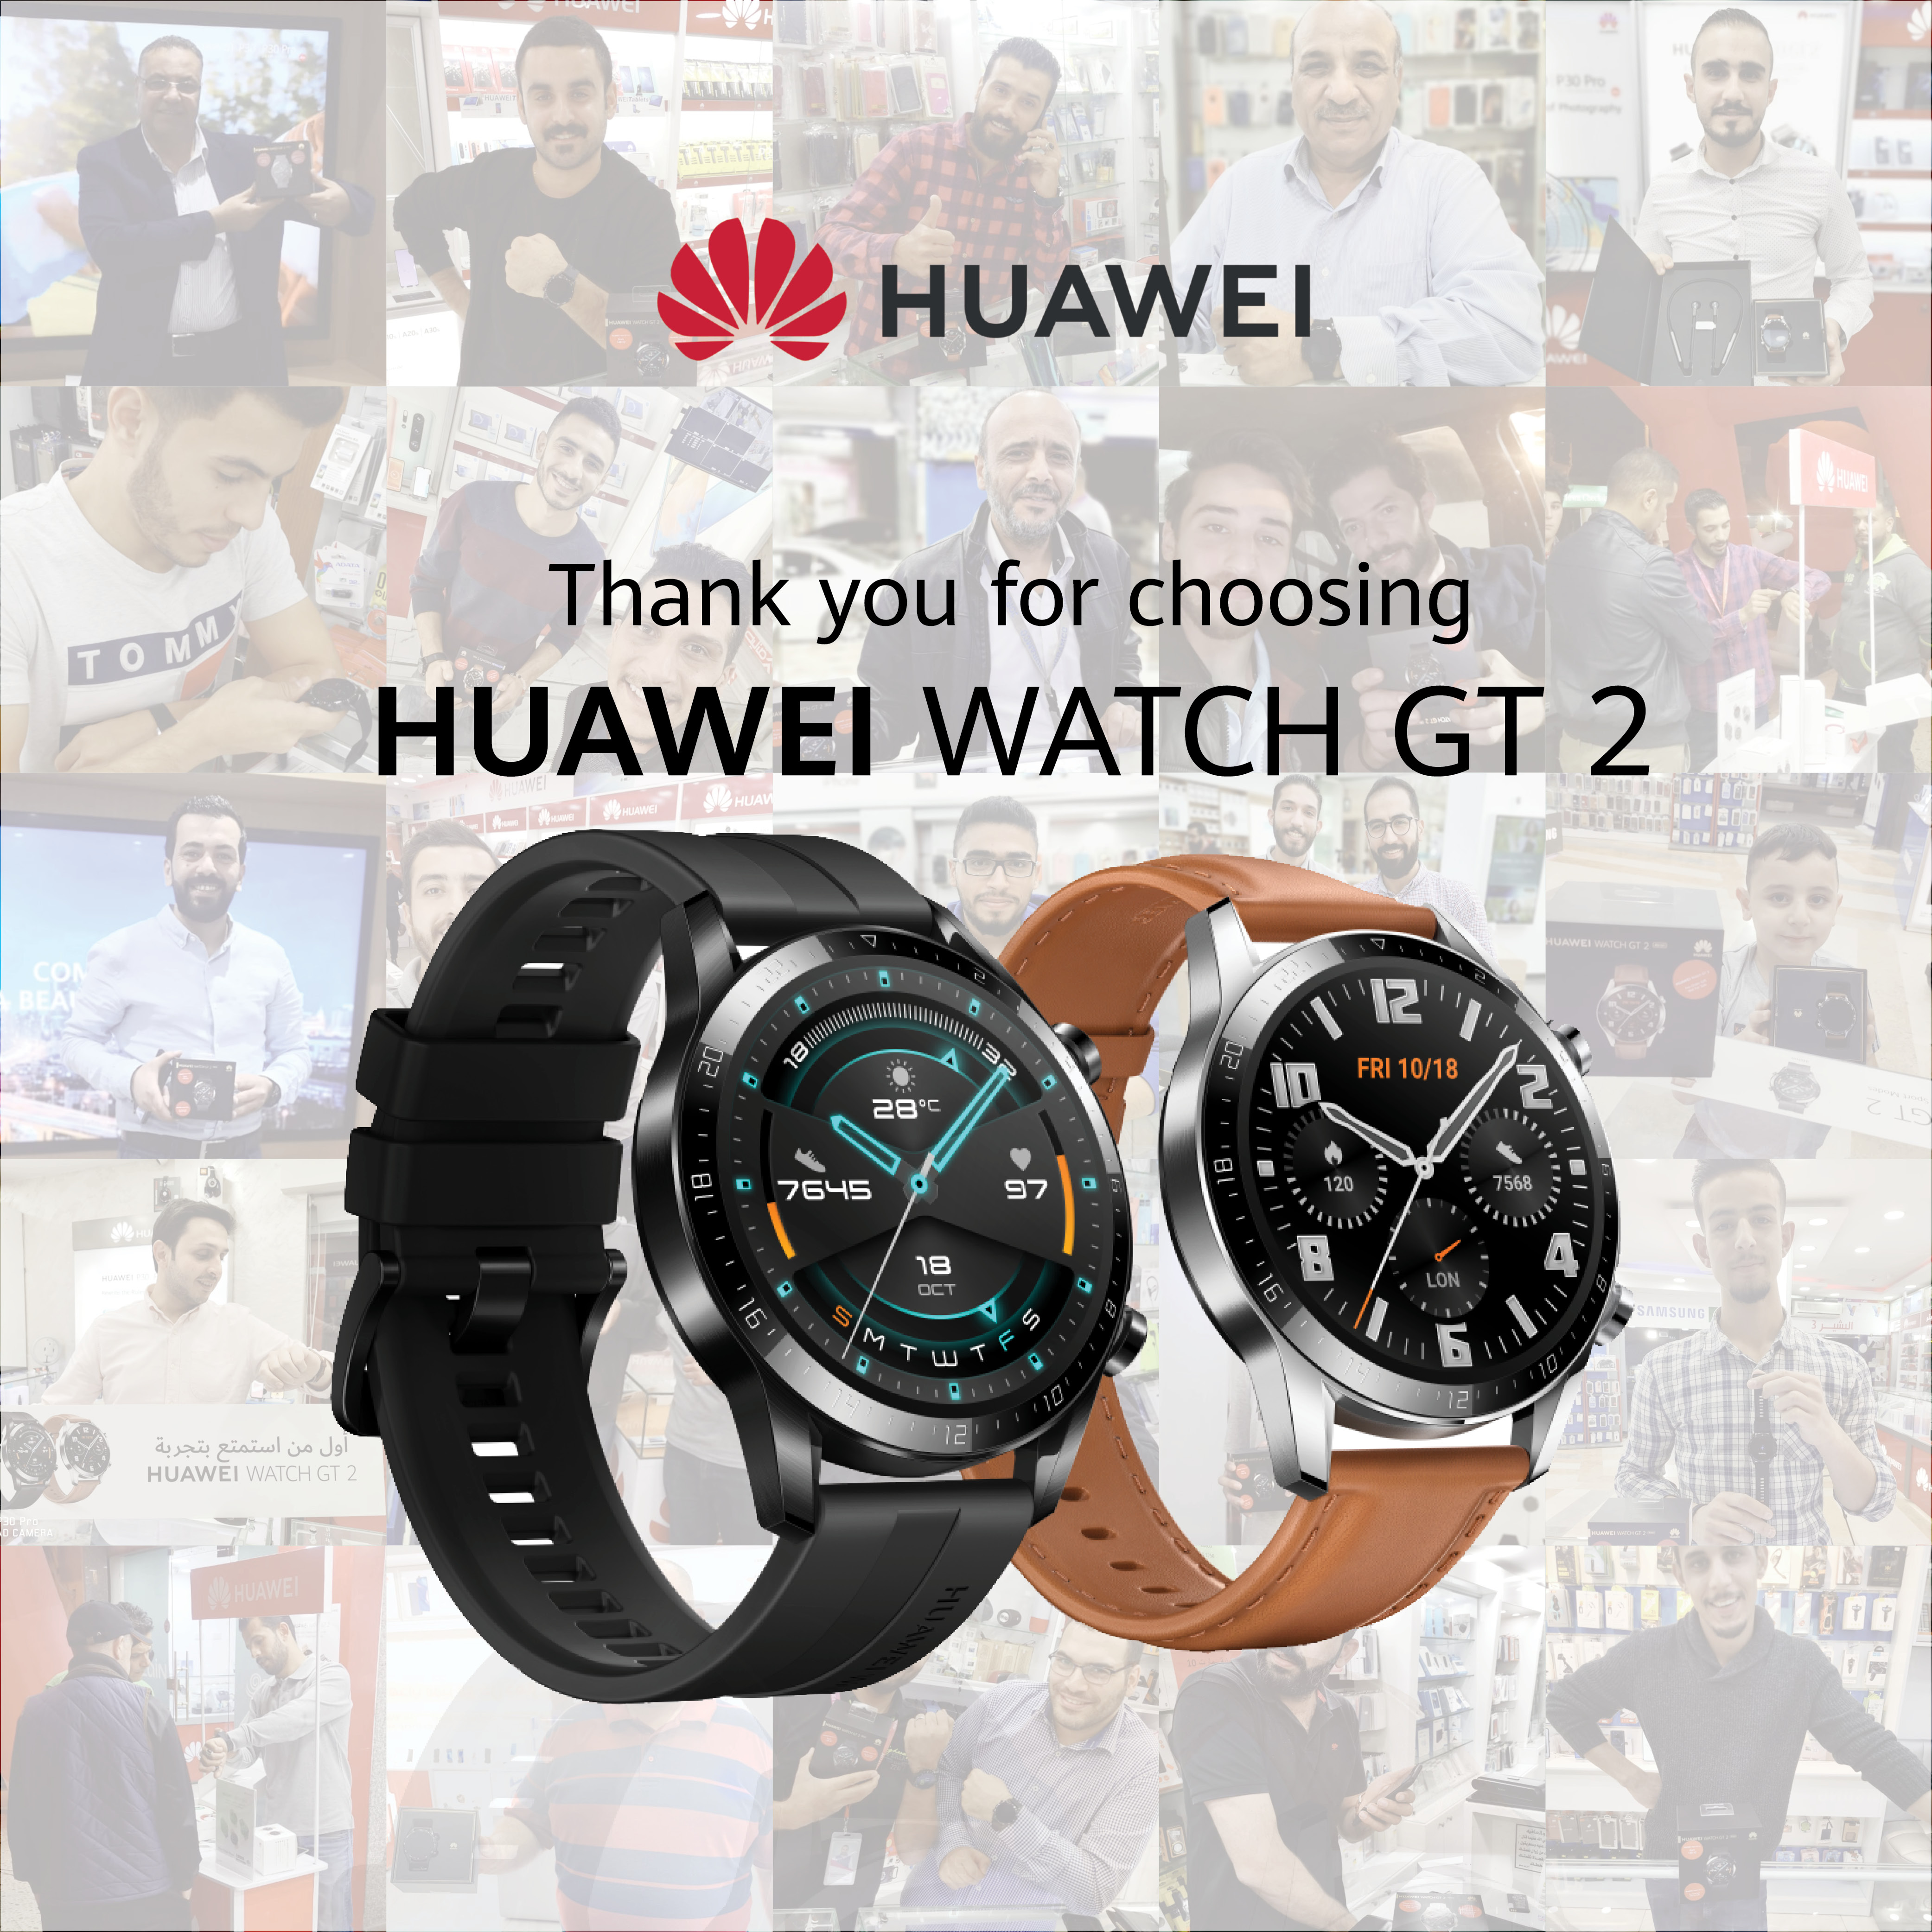 بعد أسبوع فقط على طرحها ساعة Huawei WATCH GT 2 تحقق رواجاً كبيراً في الأردن  – جريدة الغد